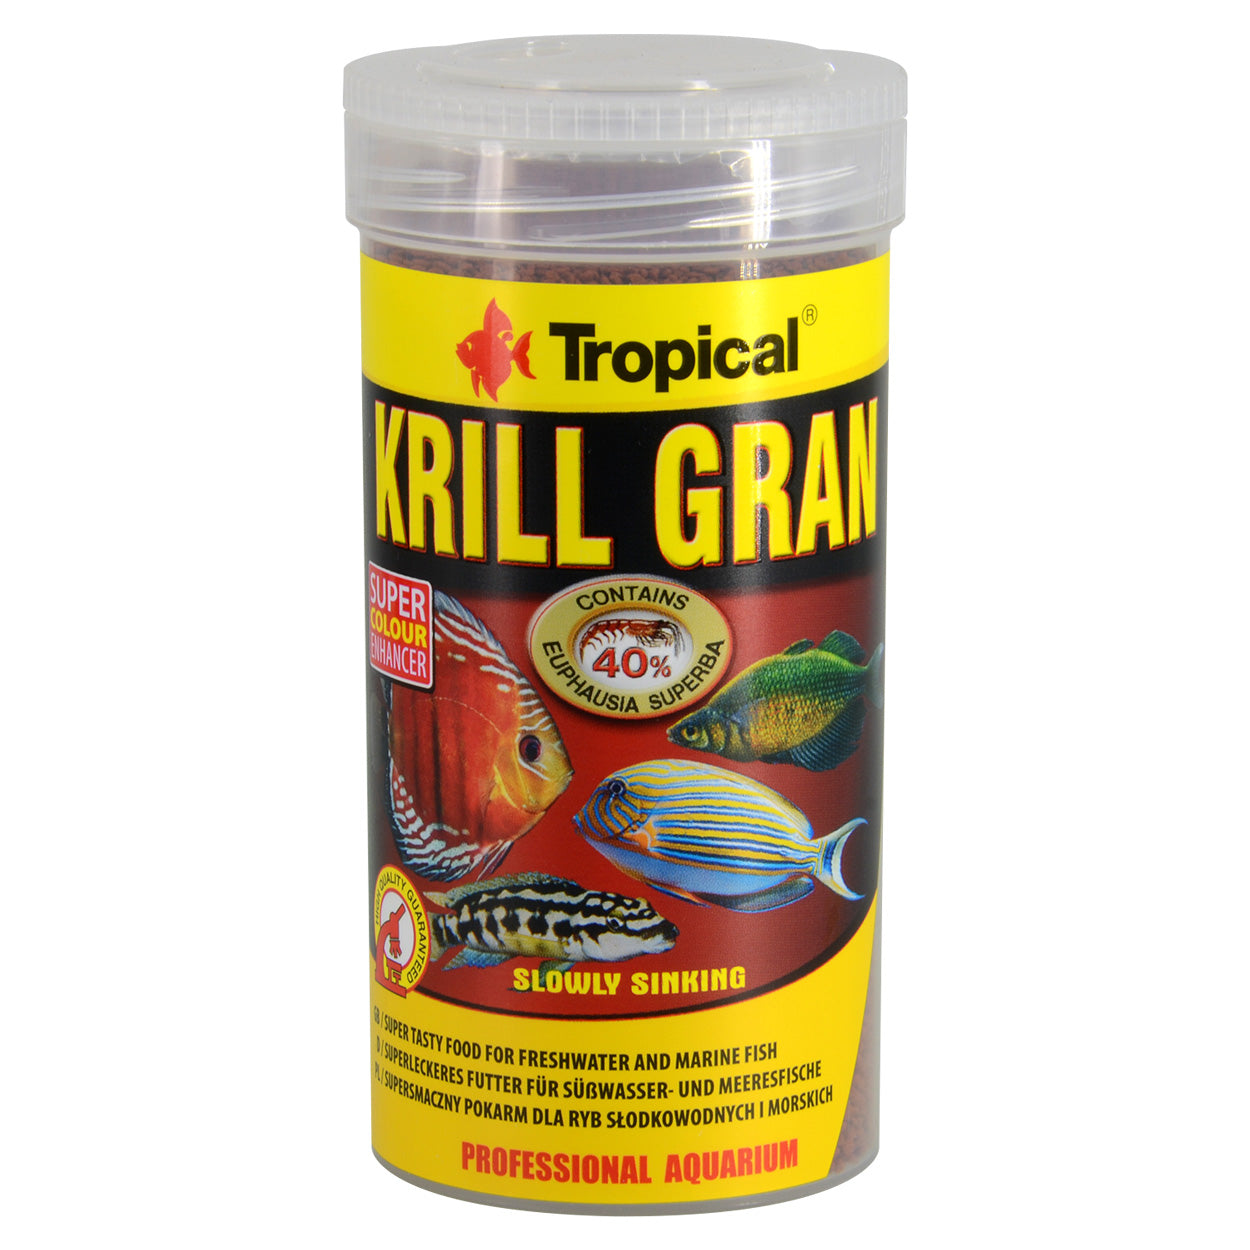 Krill Granules